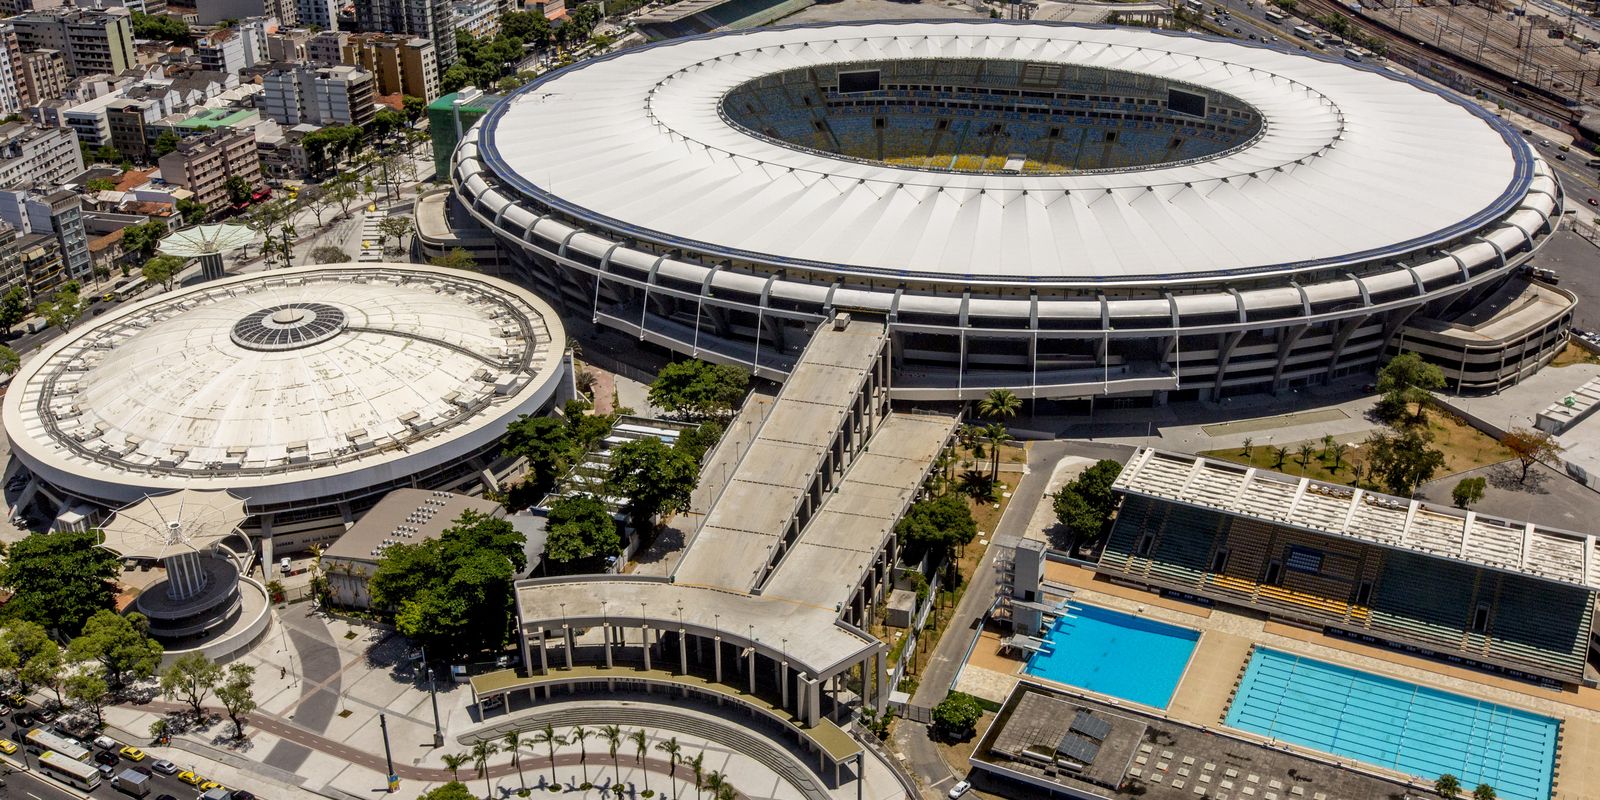 São Paulo é campeão da Copa do Brasil 2023 - Portal T5